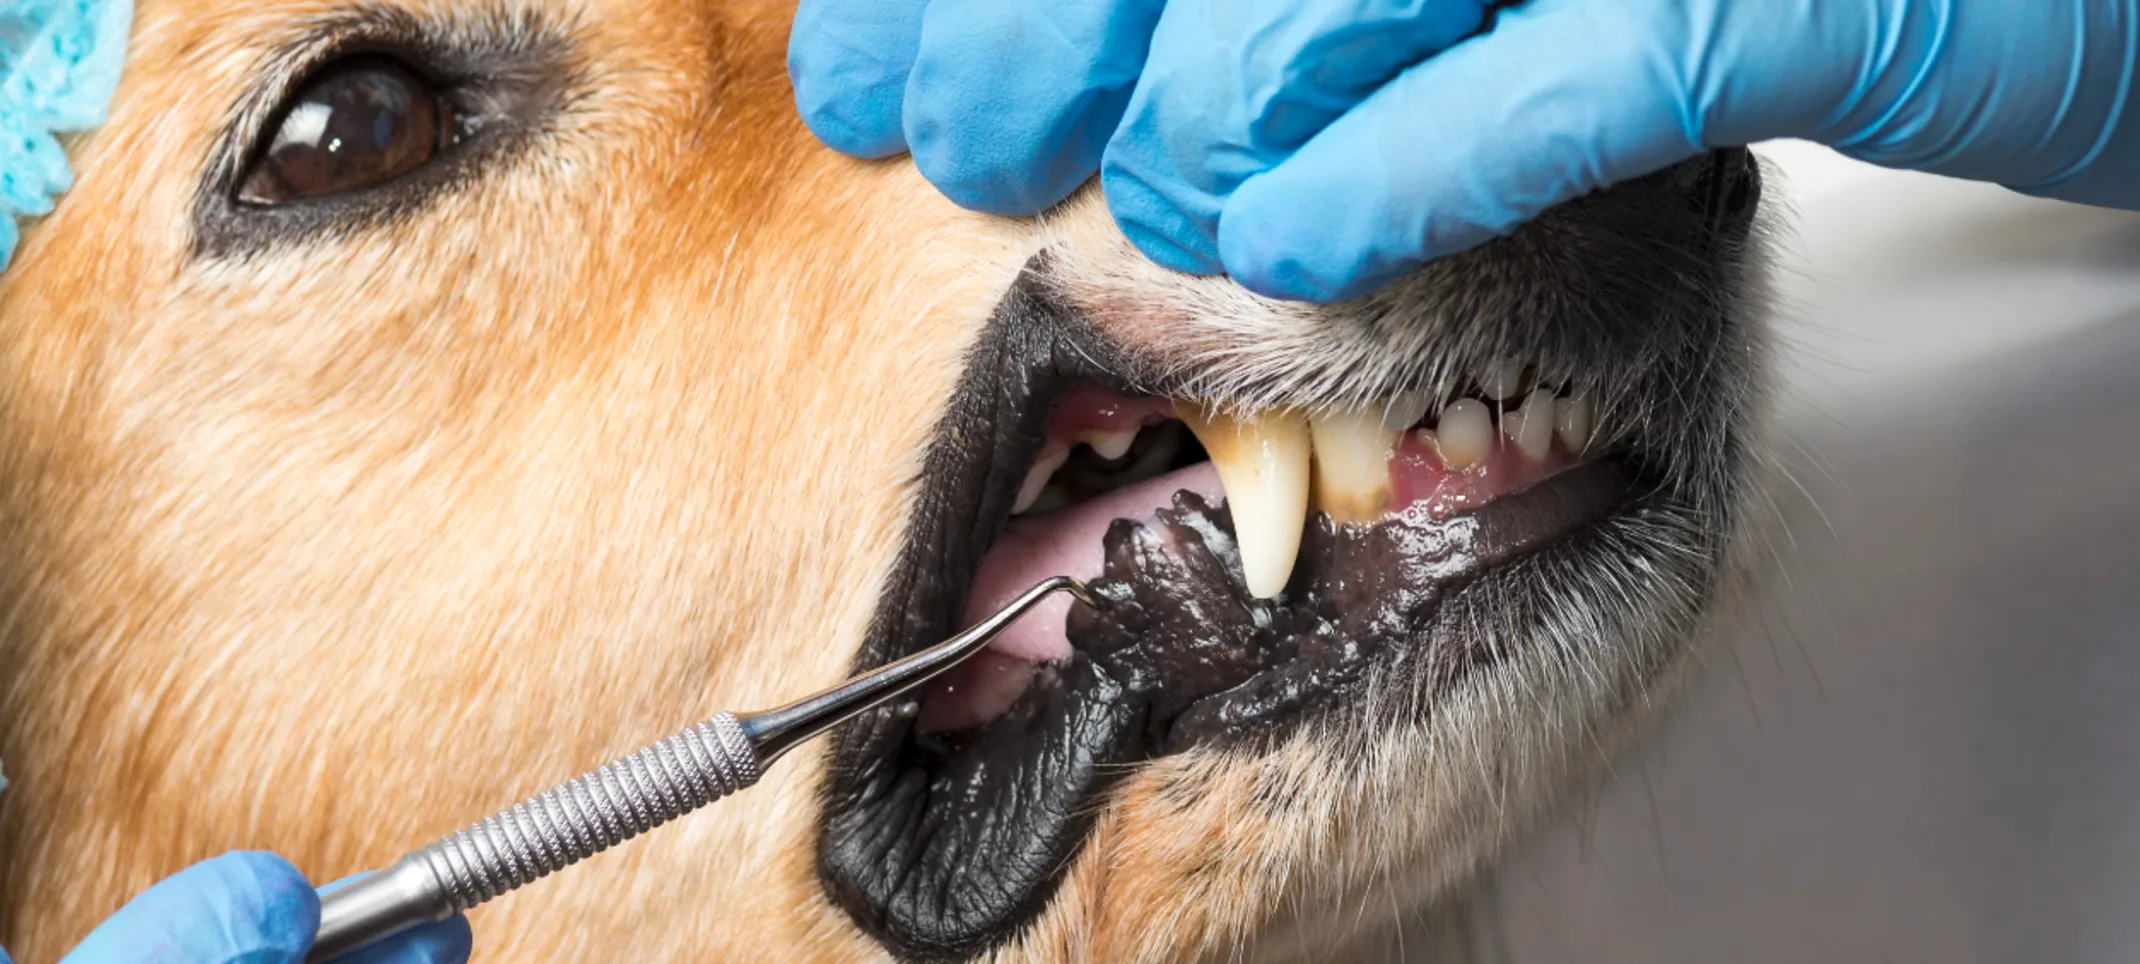 Dog getting dental work 